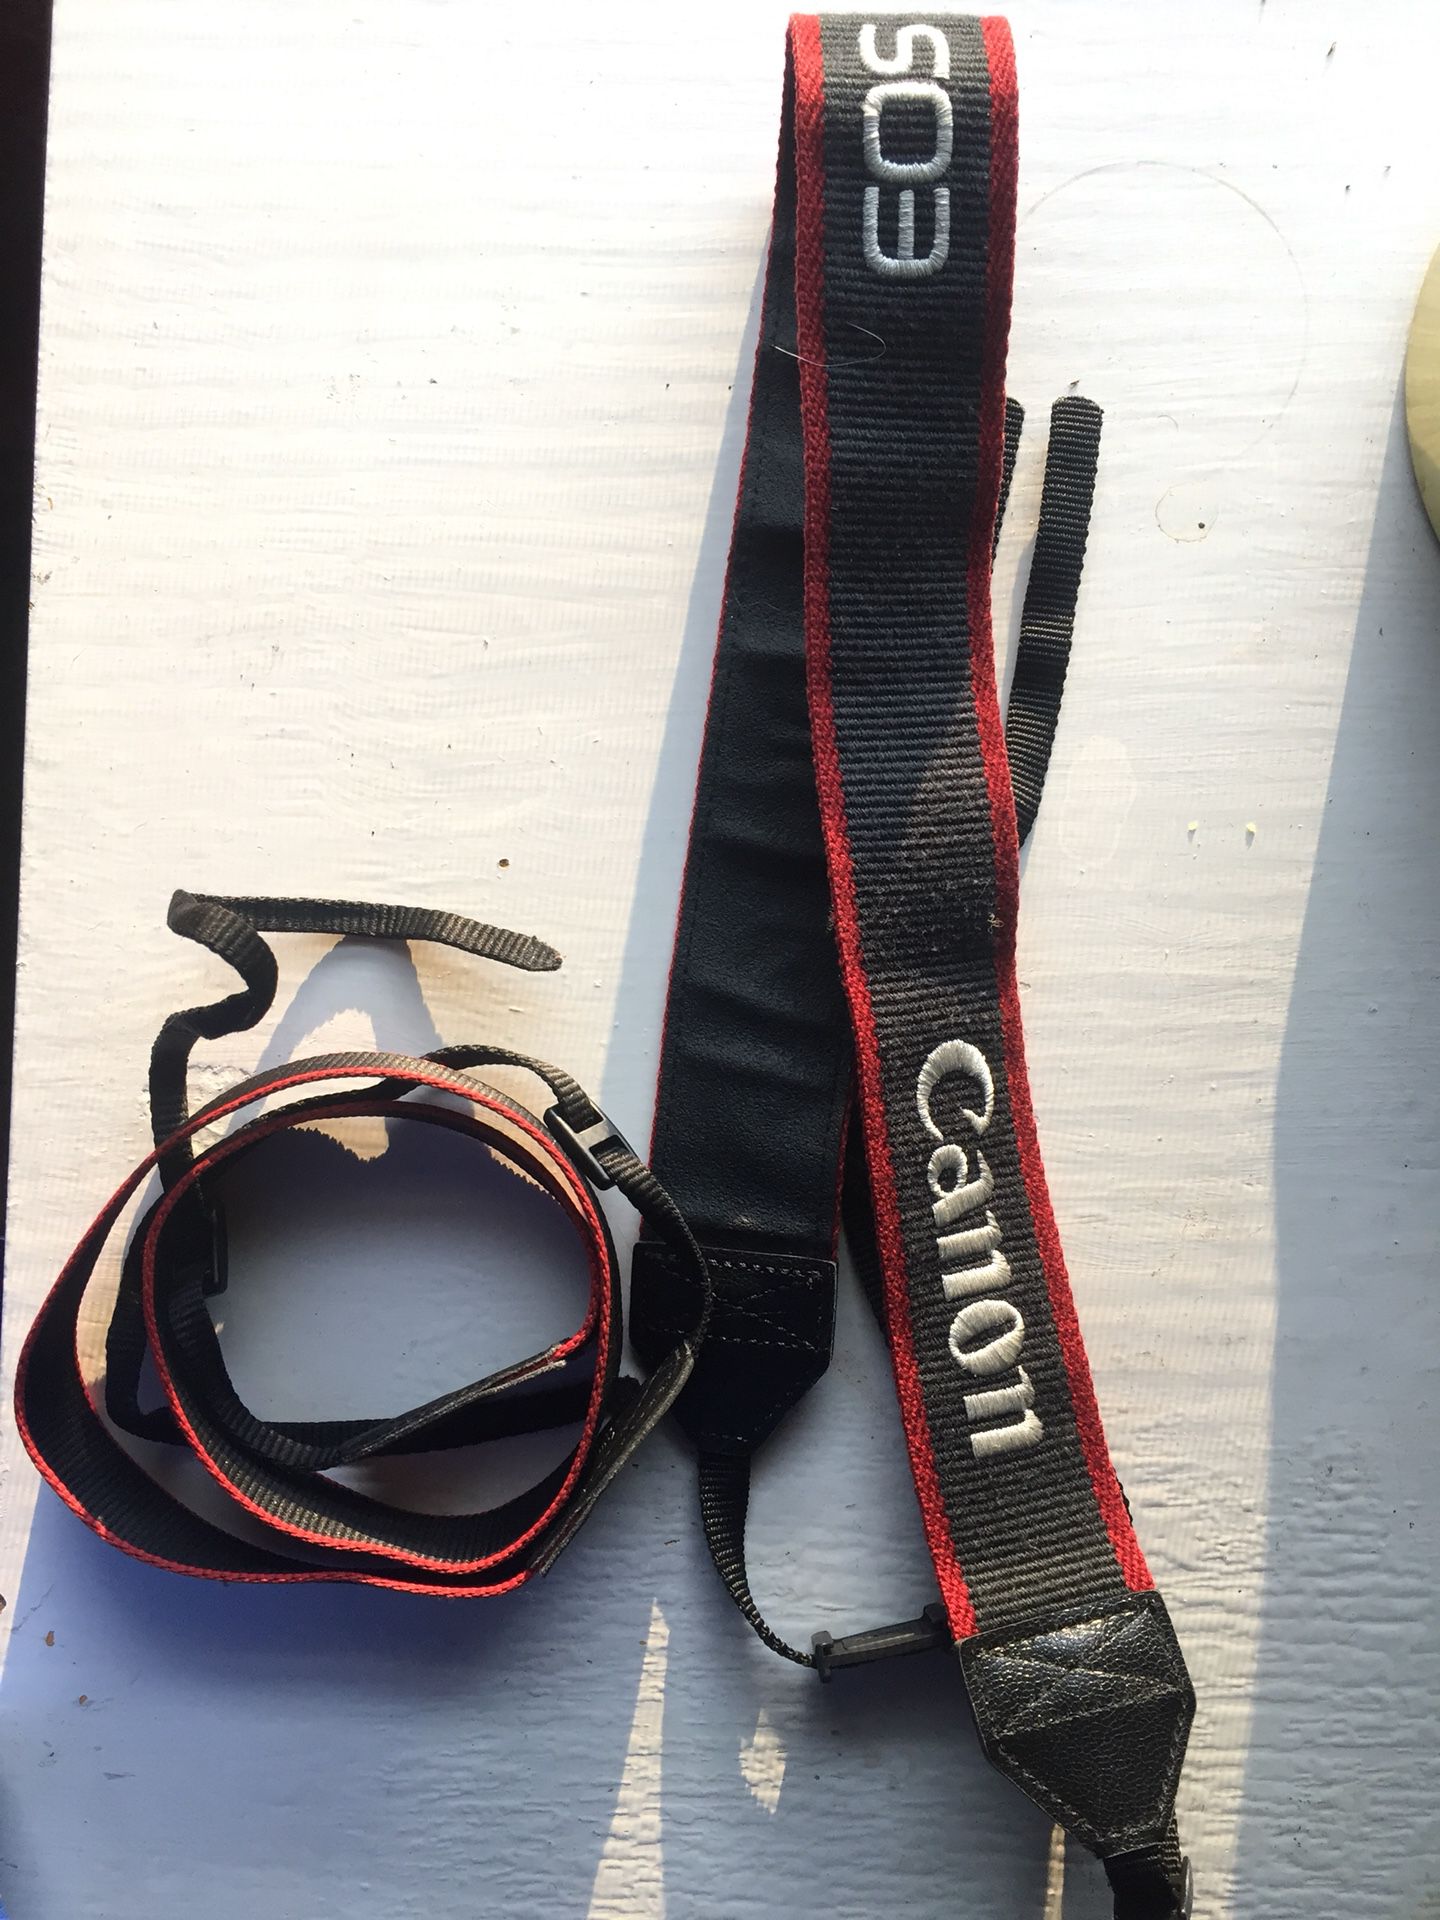 Canon camera straps